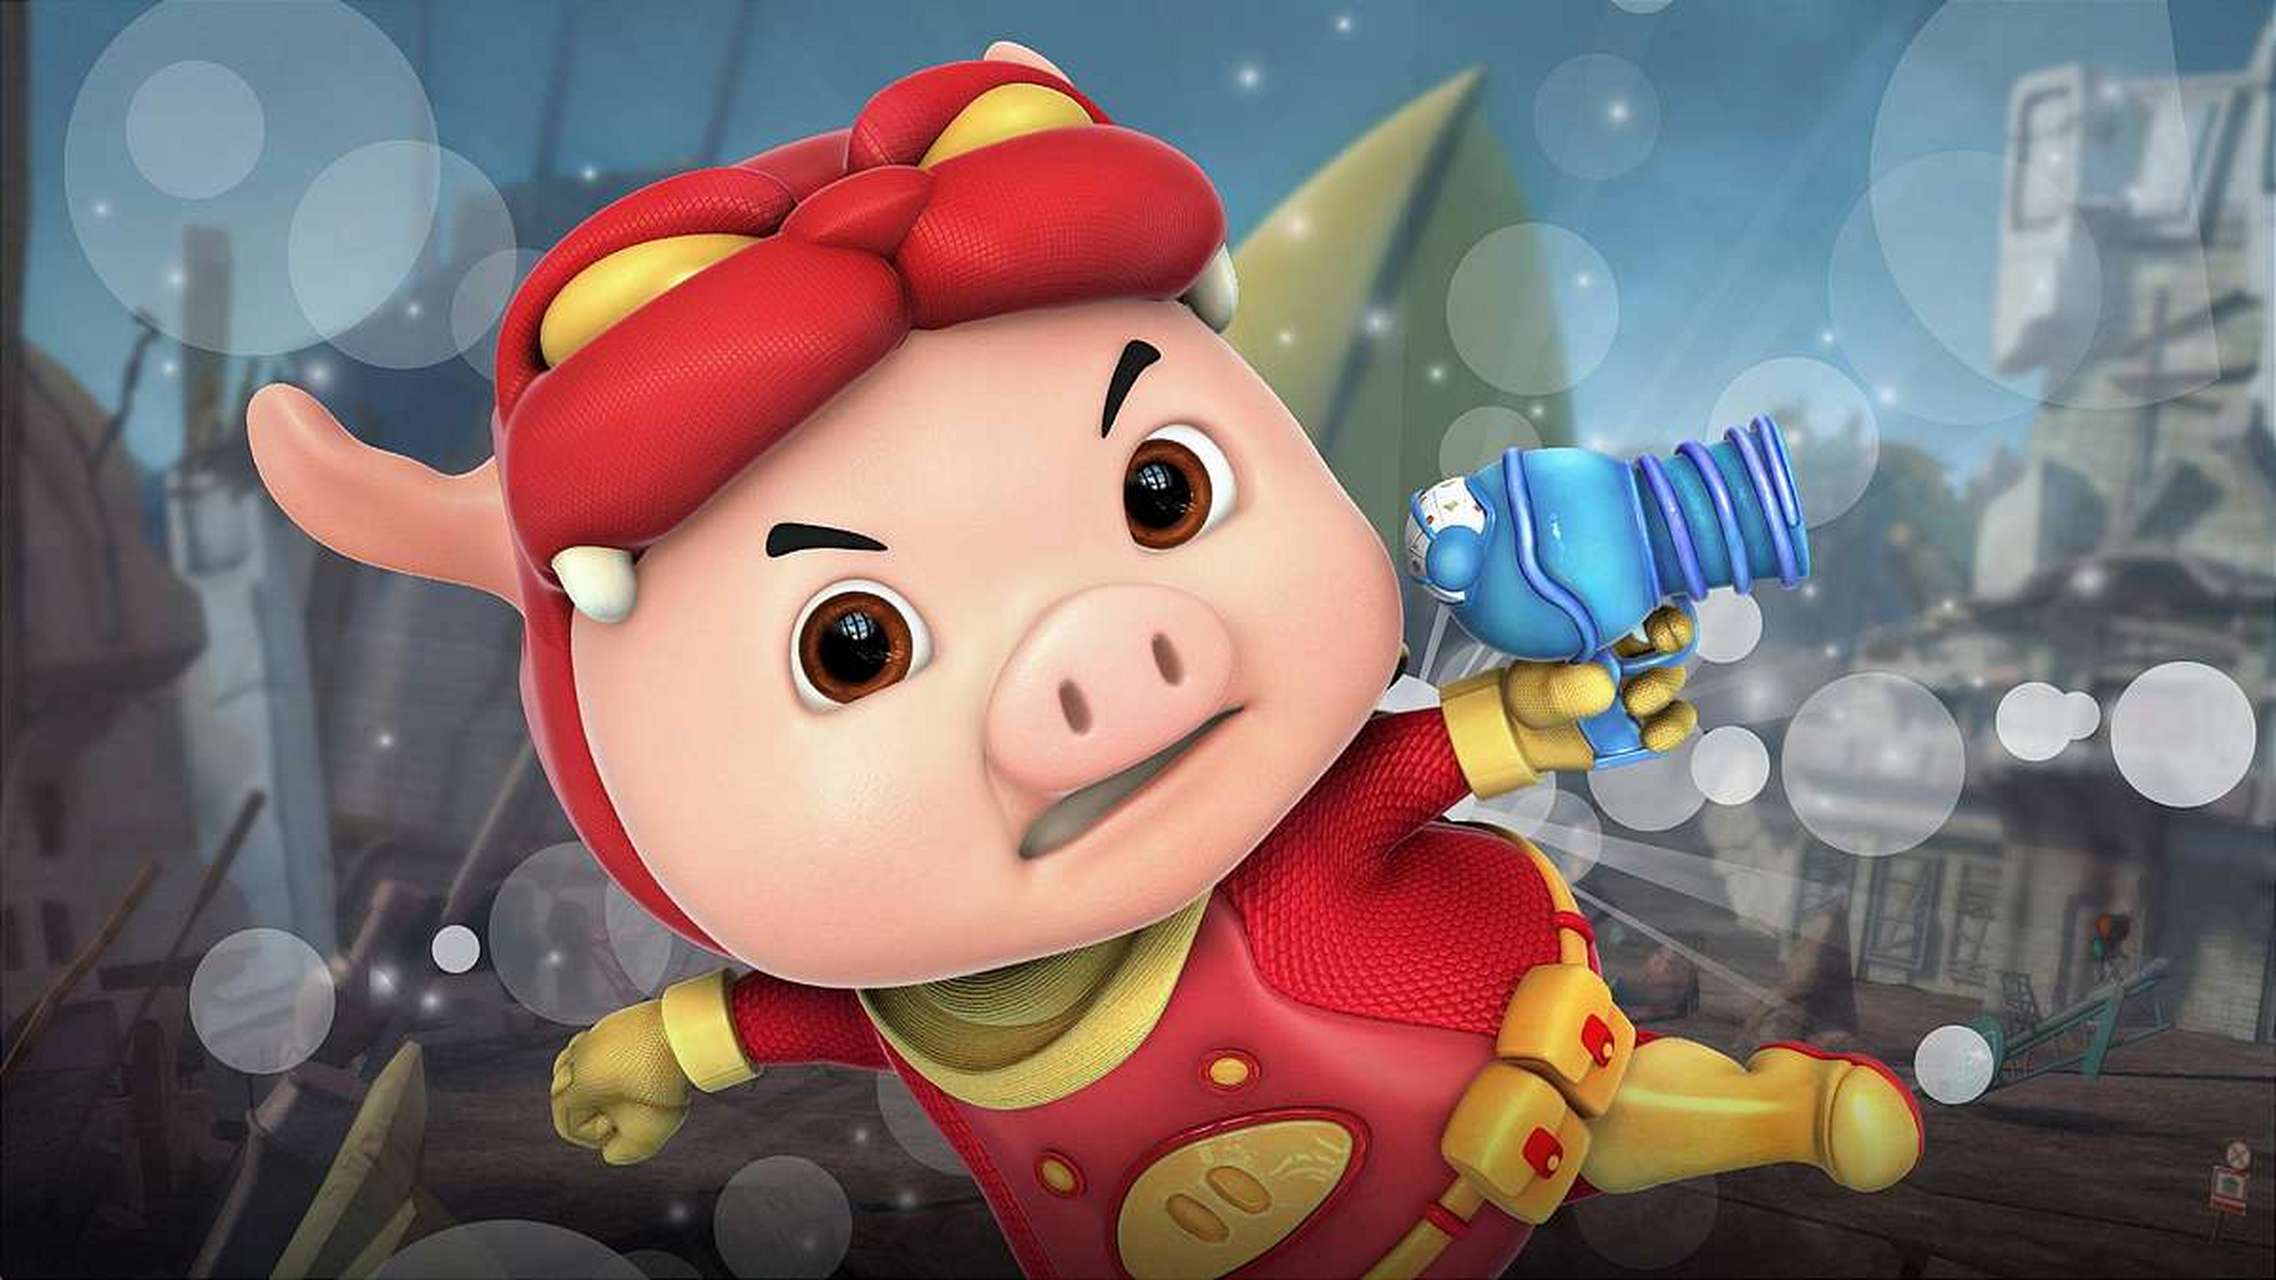 猪猪侠  题记:每个人心中都有个英雄,他叫猪猪侠